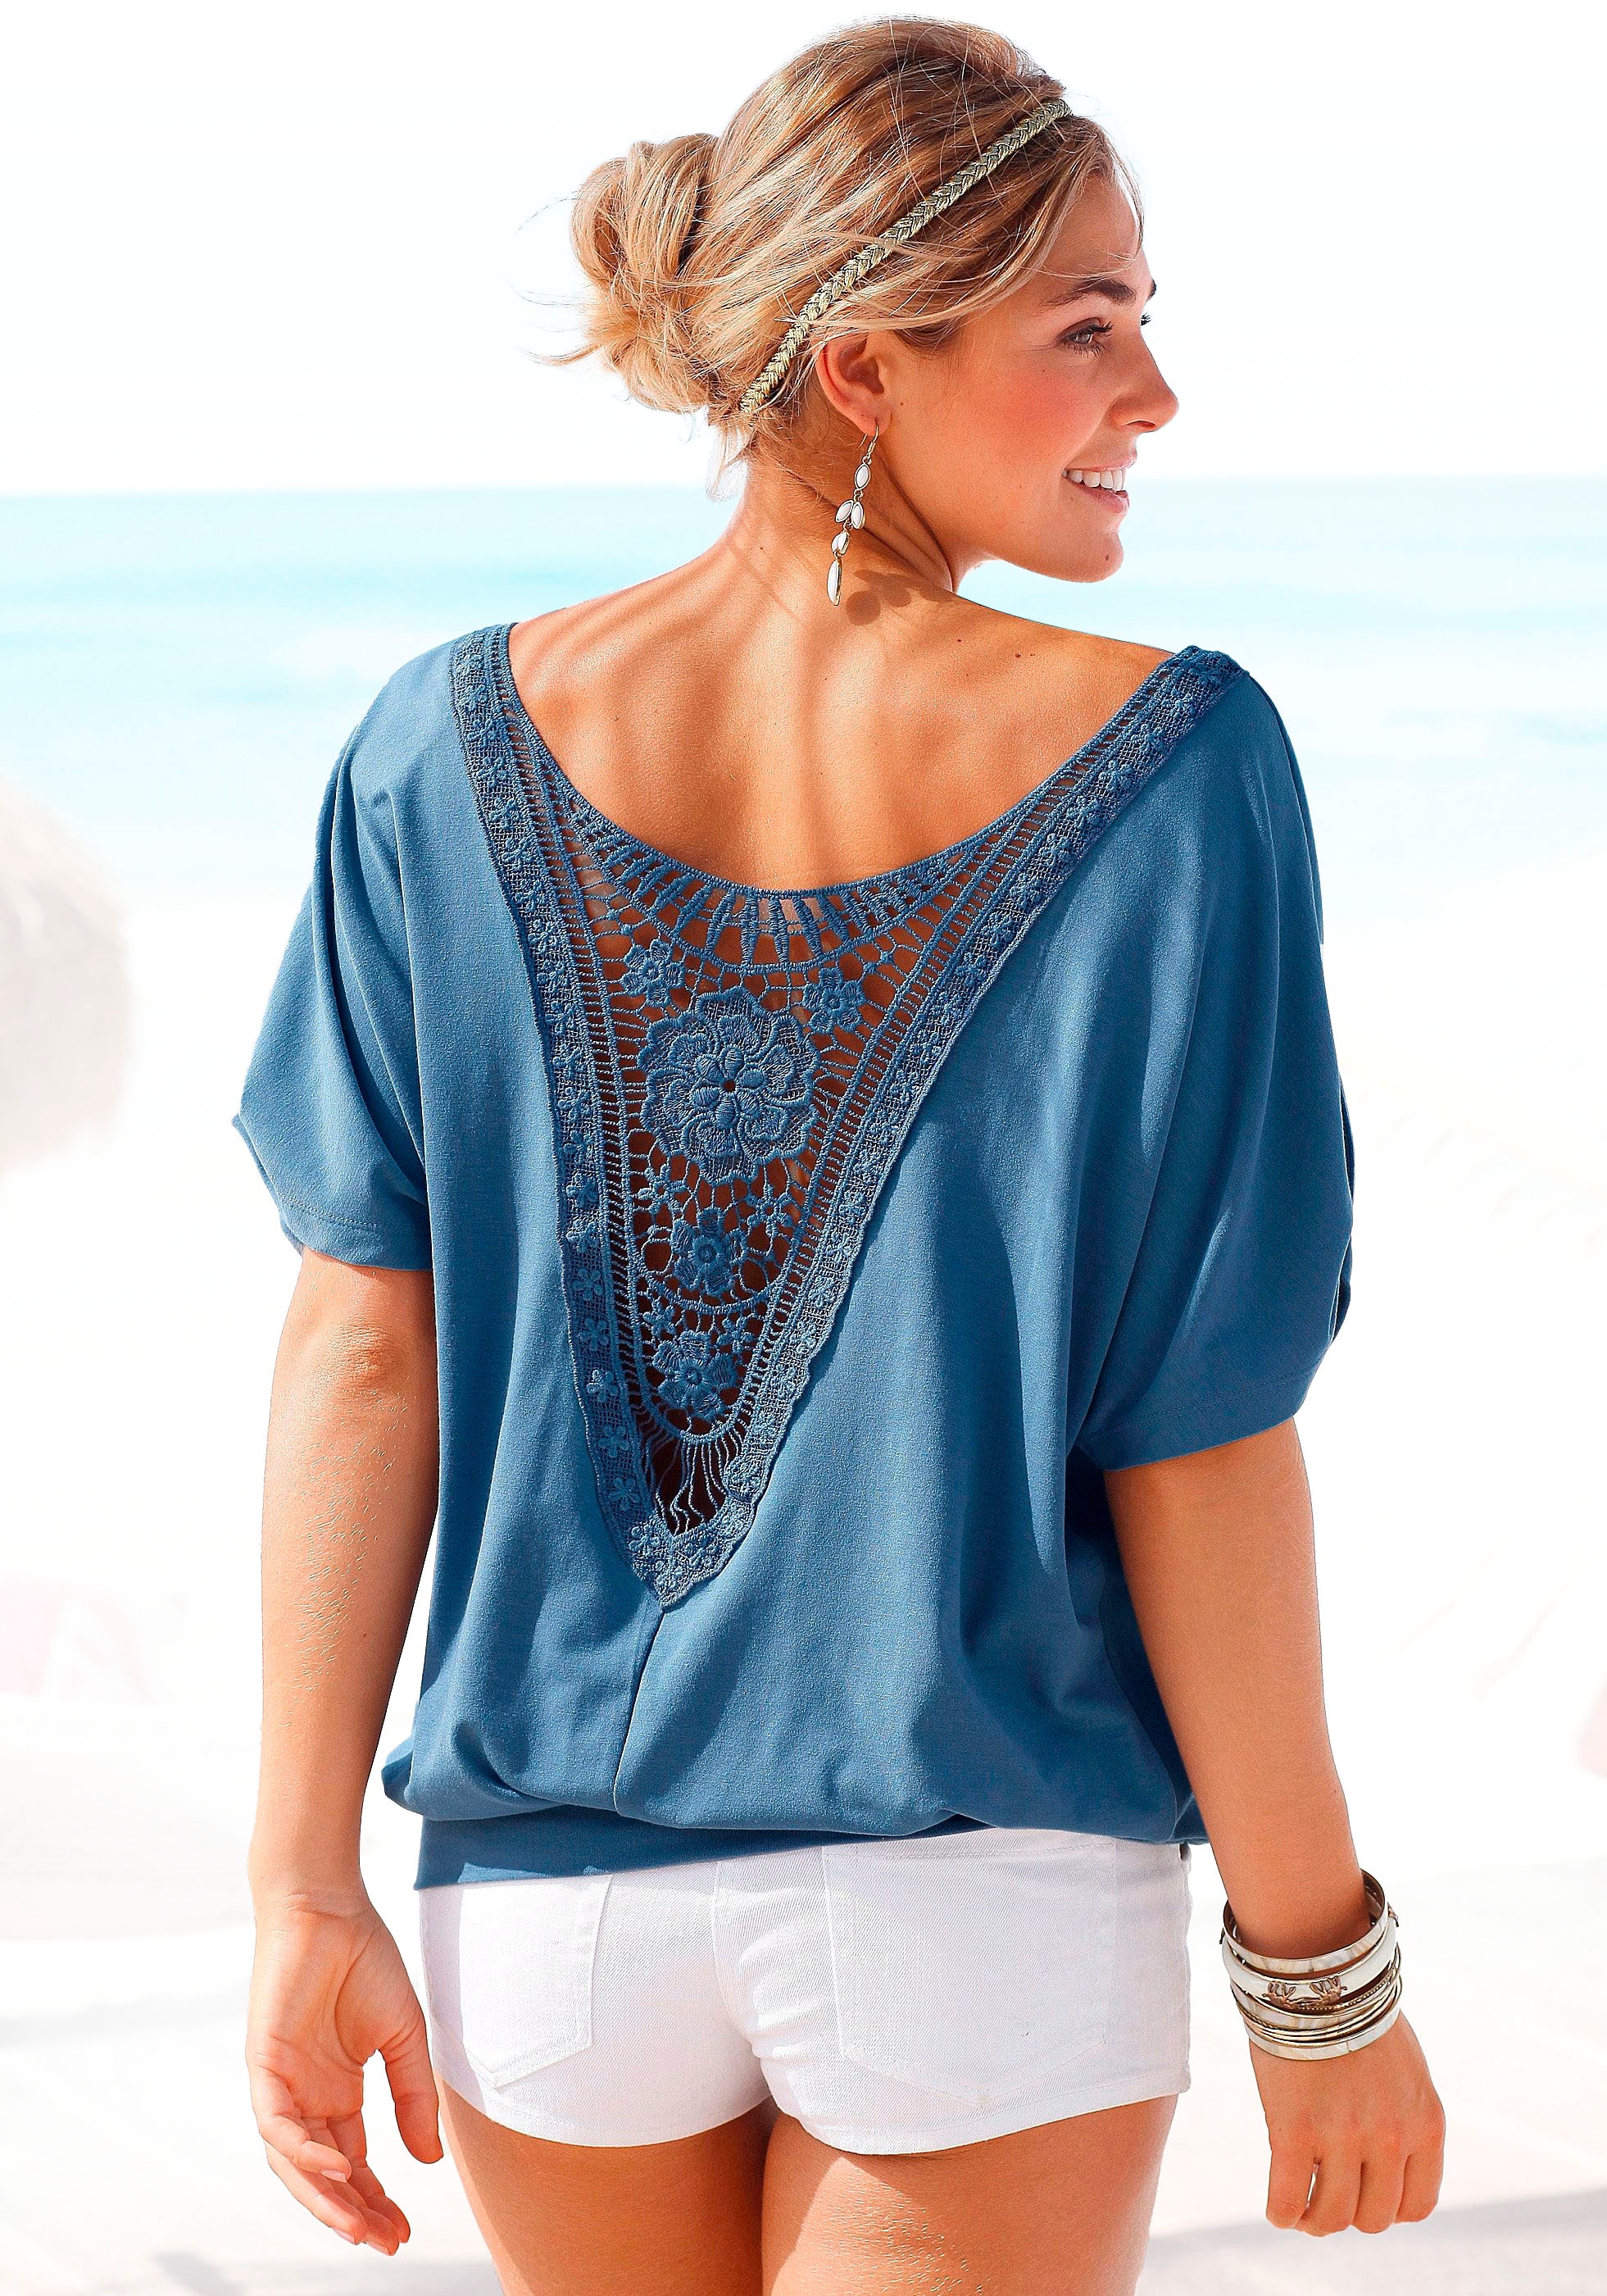 LASCANA Strandshirt, mit Häkeleinsatz am Rücken, T-Shirt, weite Passform, luftig und locker